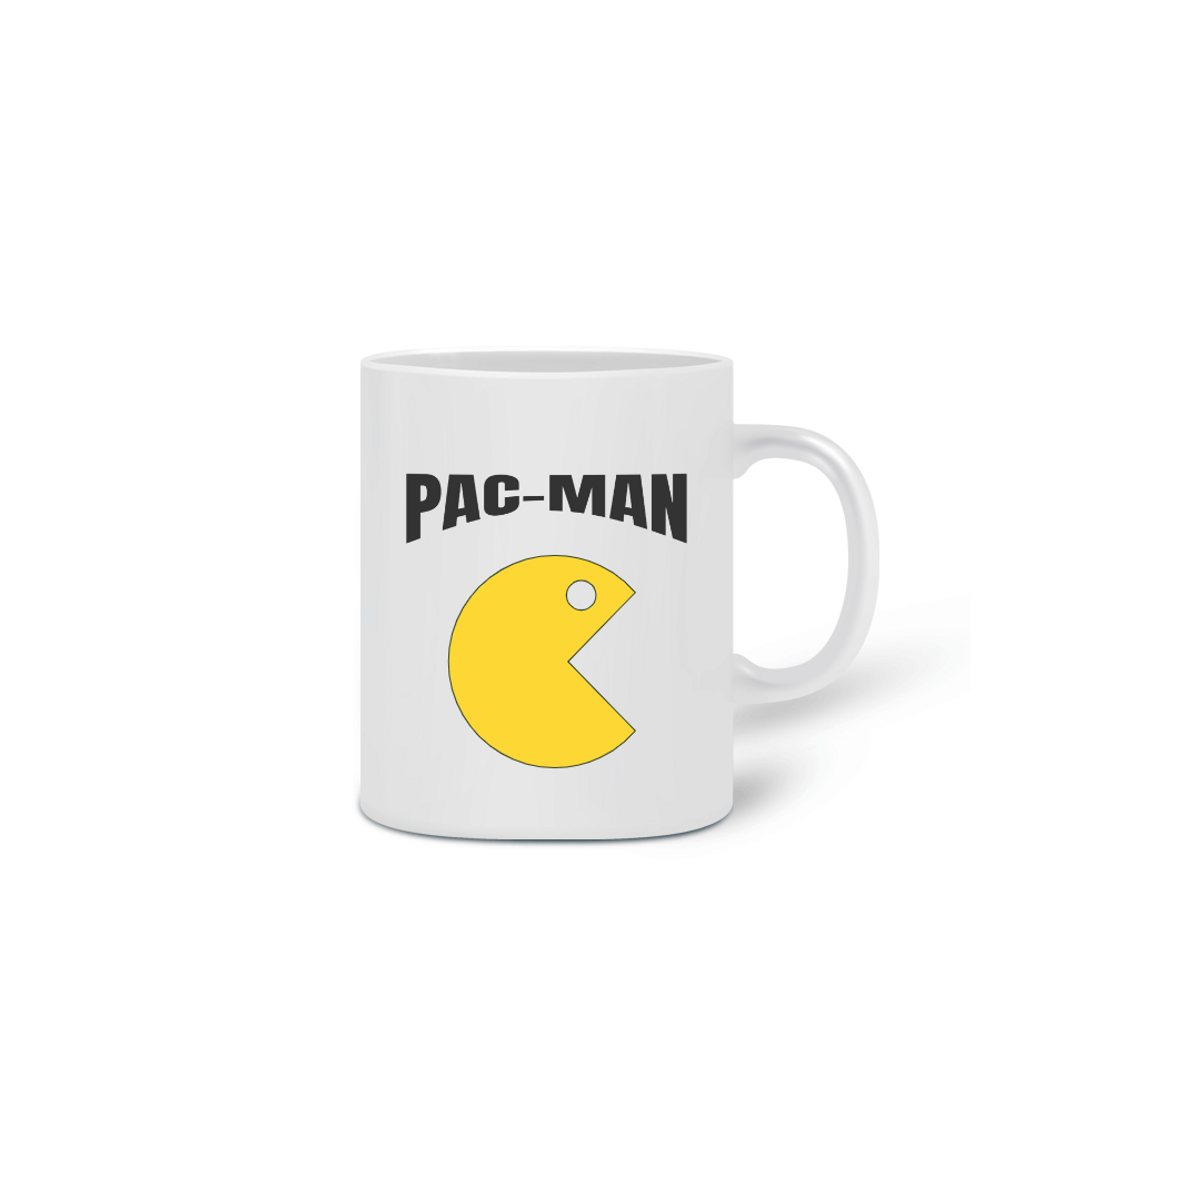 Nome do produto: Caneca Pac-Man - SUPER PROMOÇÃO DE INAUGURAÇÃO DE 49,90 POR APENAS 35,00